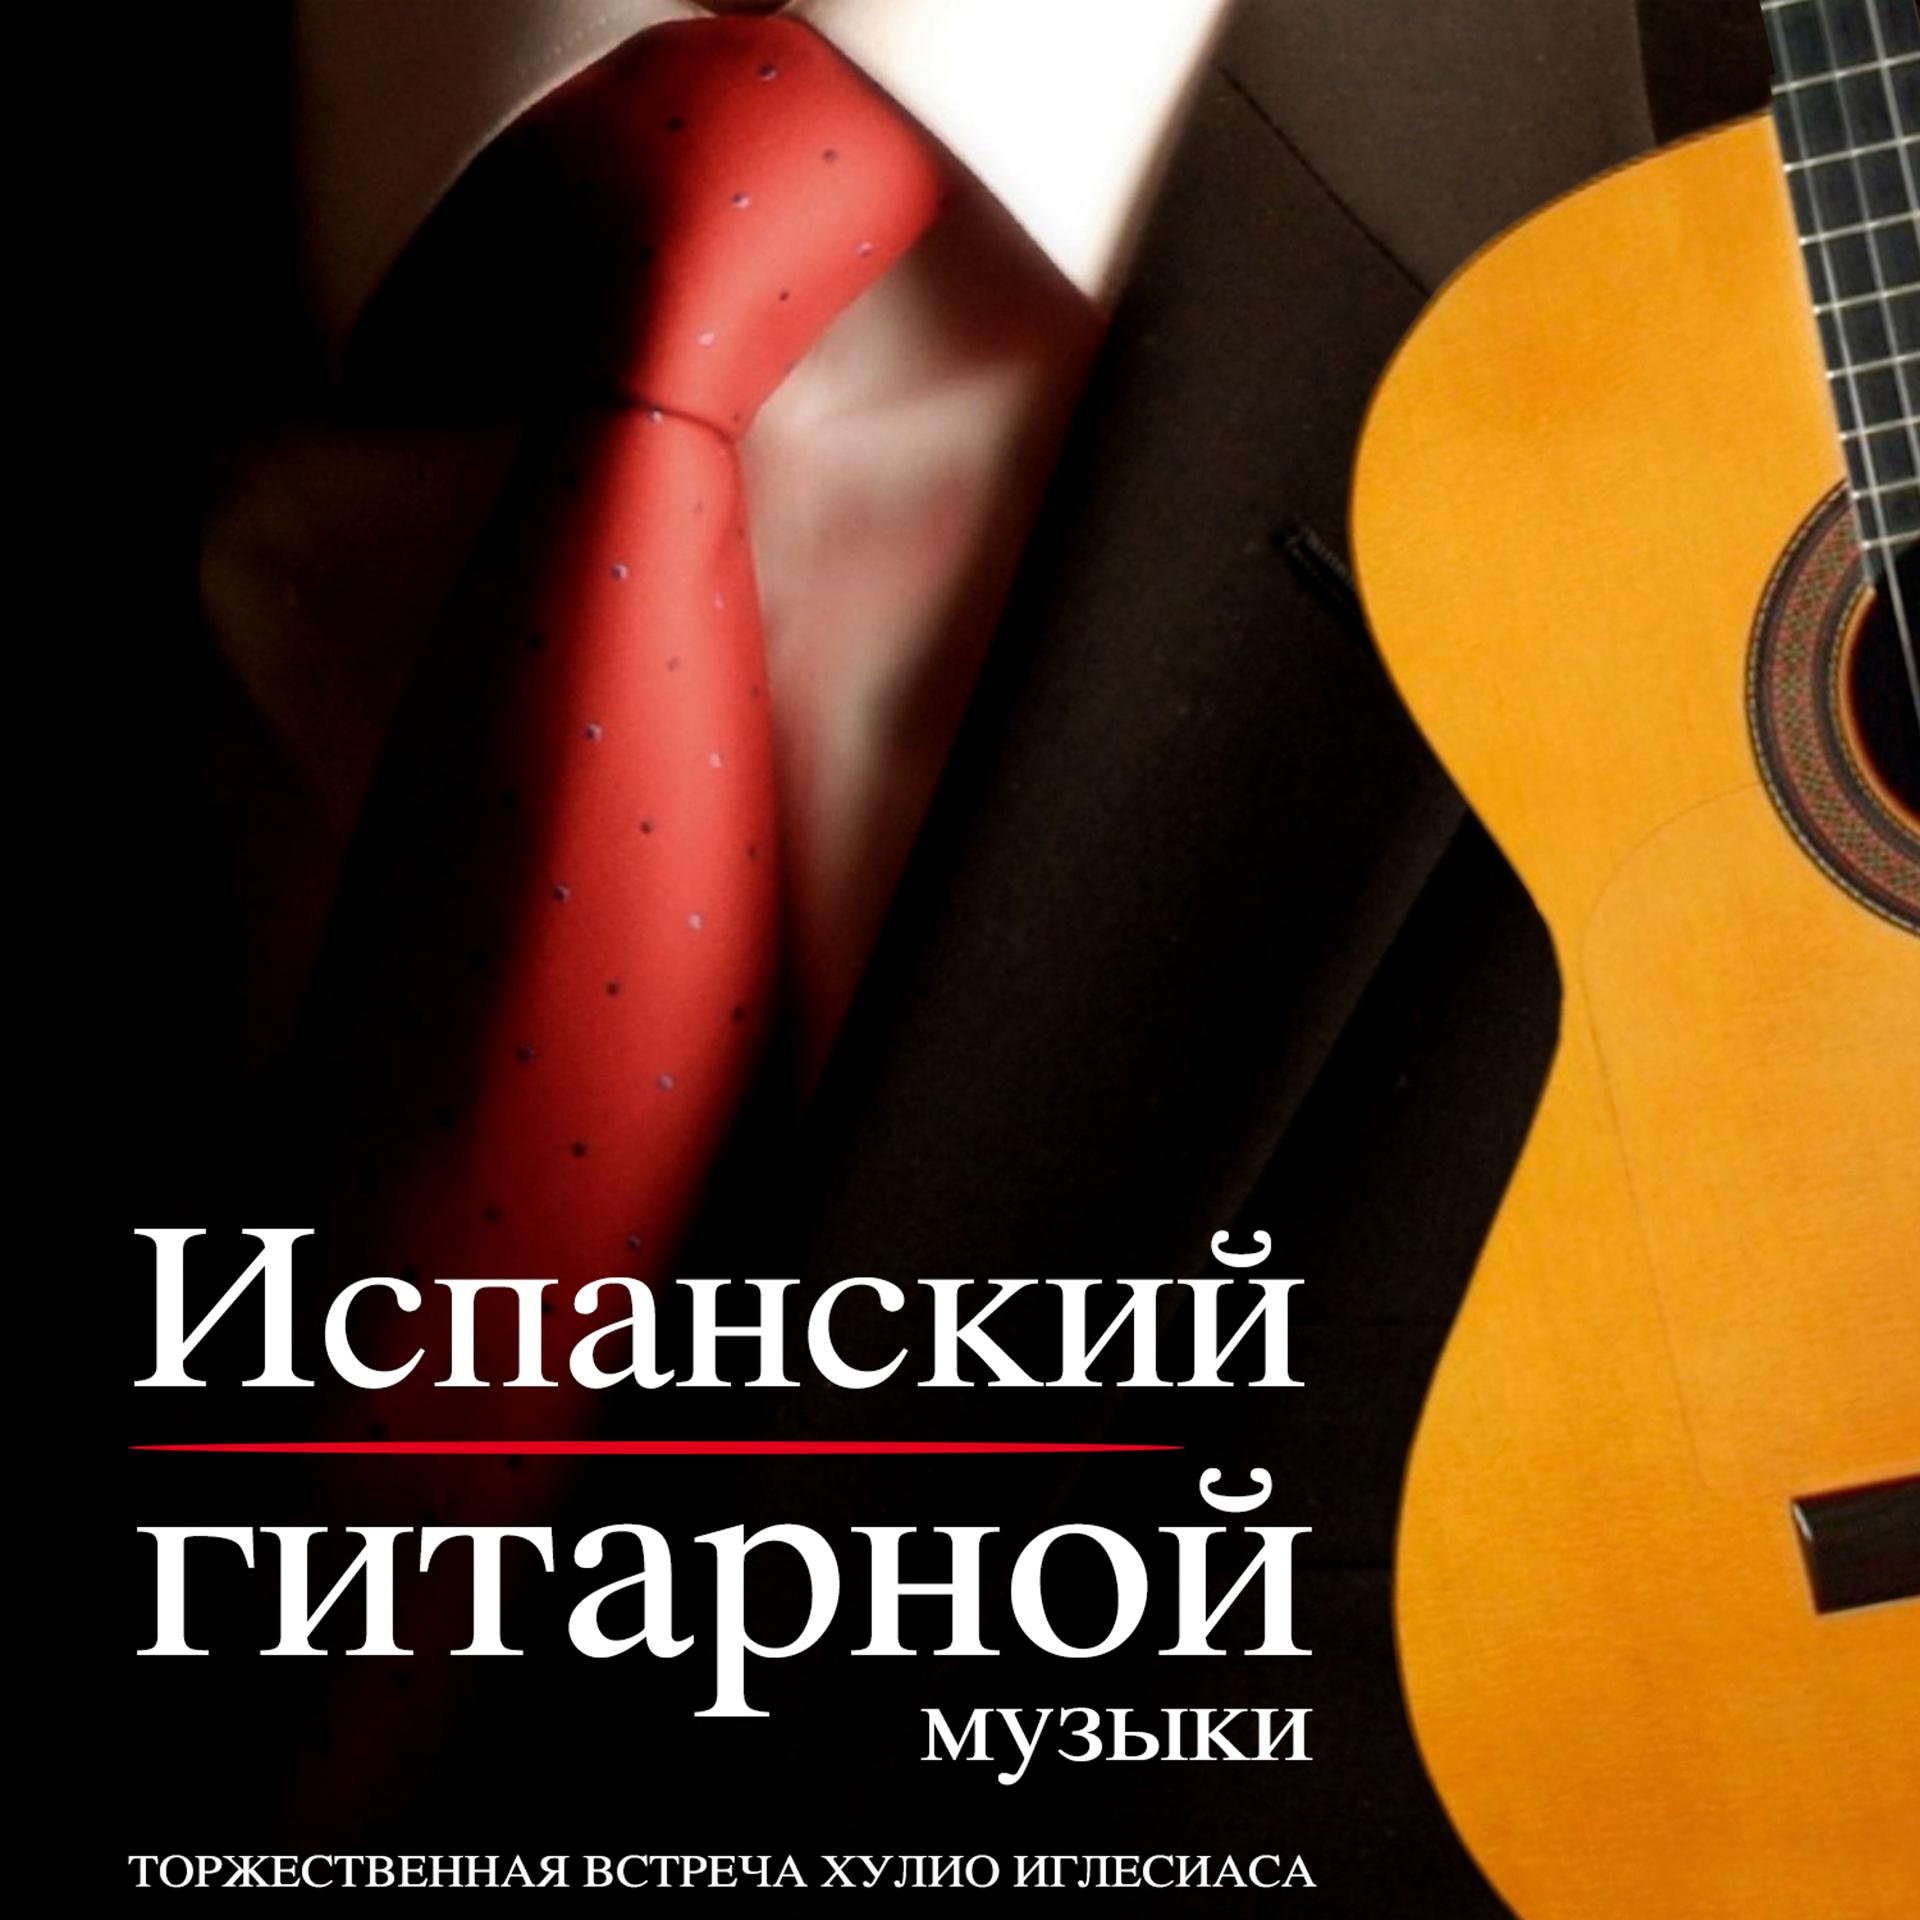 Постер альбома Испанский гитарной музыки. ТОРЖЕСТВЕННАЯ ВСТРЕЧА ХУЛИО ИГЛЕСИАСА